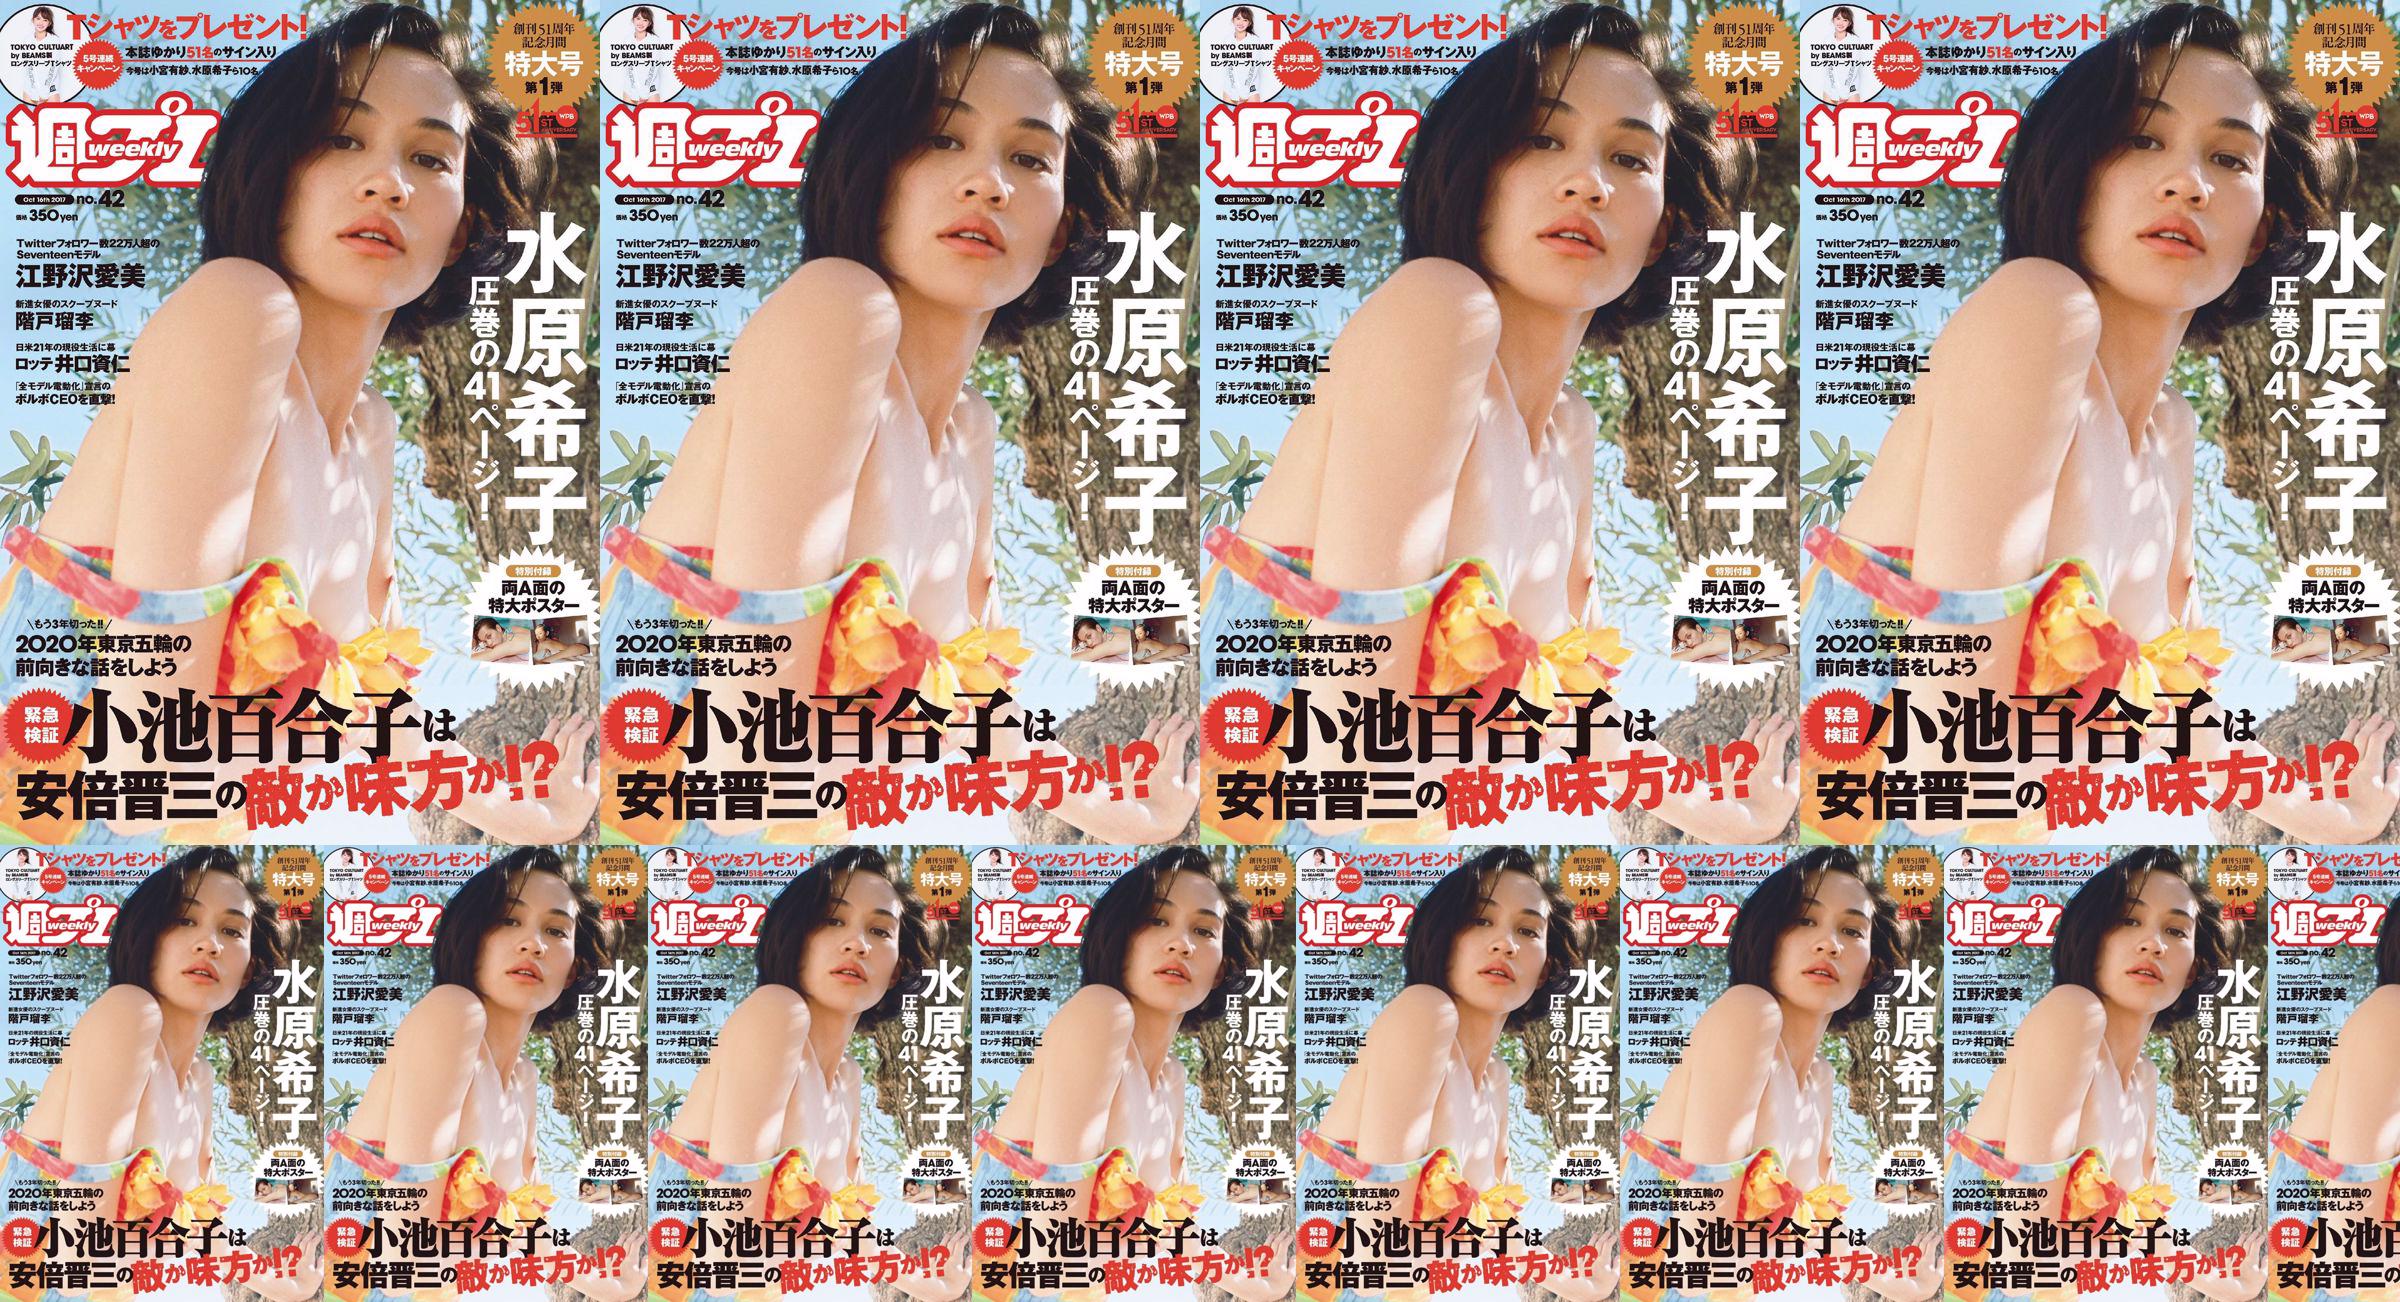 Kiko Mizuhara Manami Enosawa Serina Fukui Miu Nakamura Ruri Shinato [Wöchentlicher Playboy] 2017 Nr. 42 Fotomagazin No.152469 Seite 1